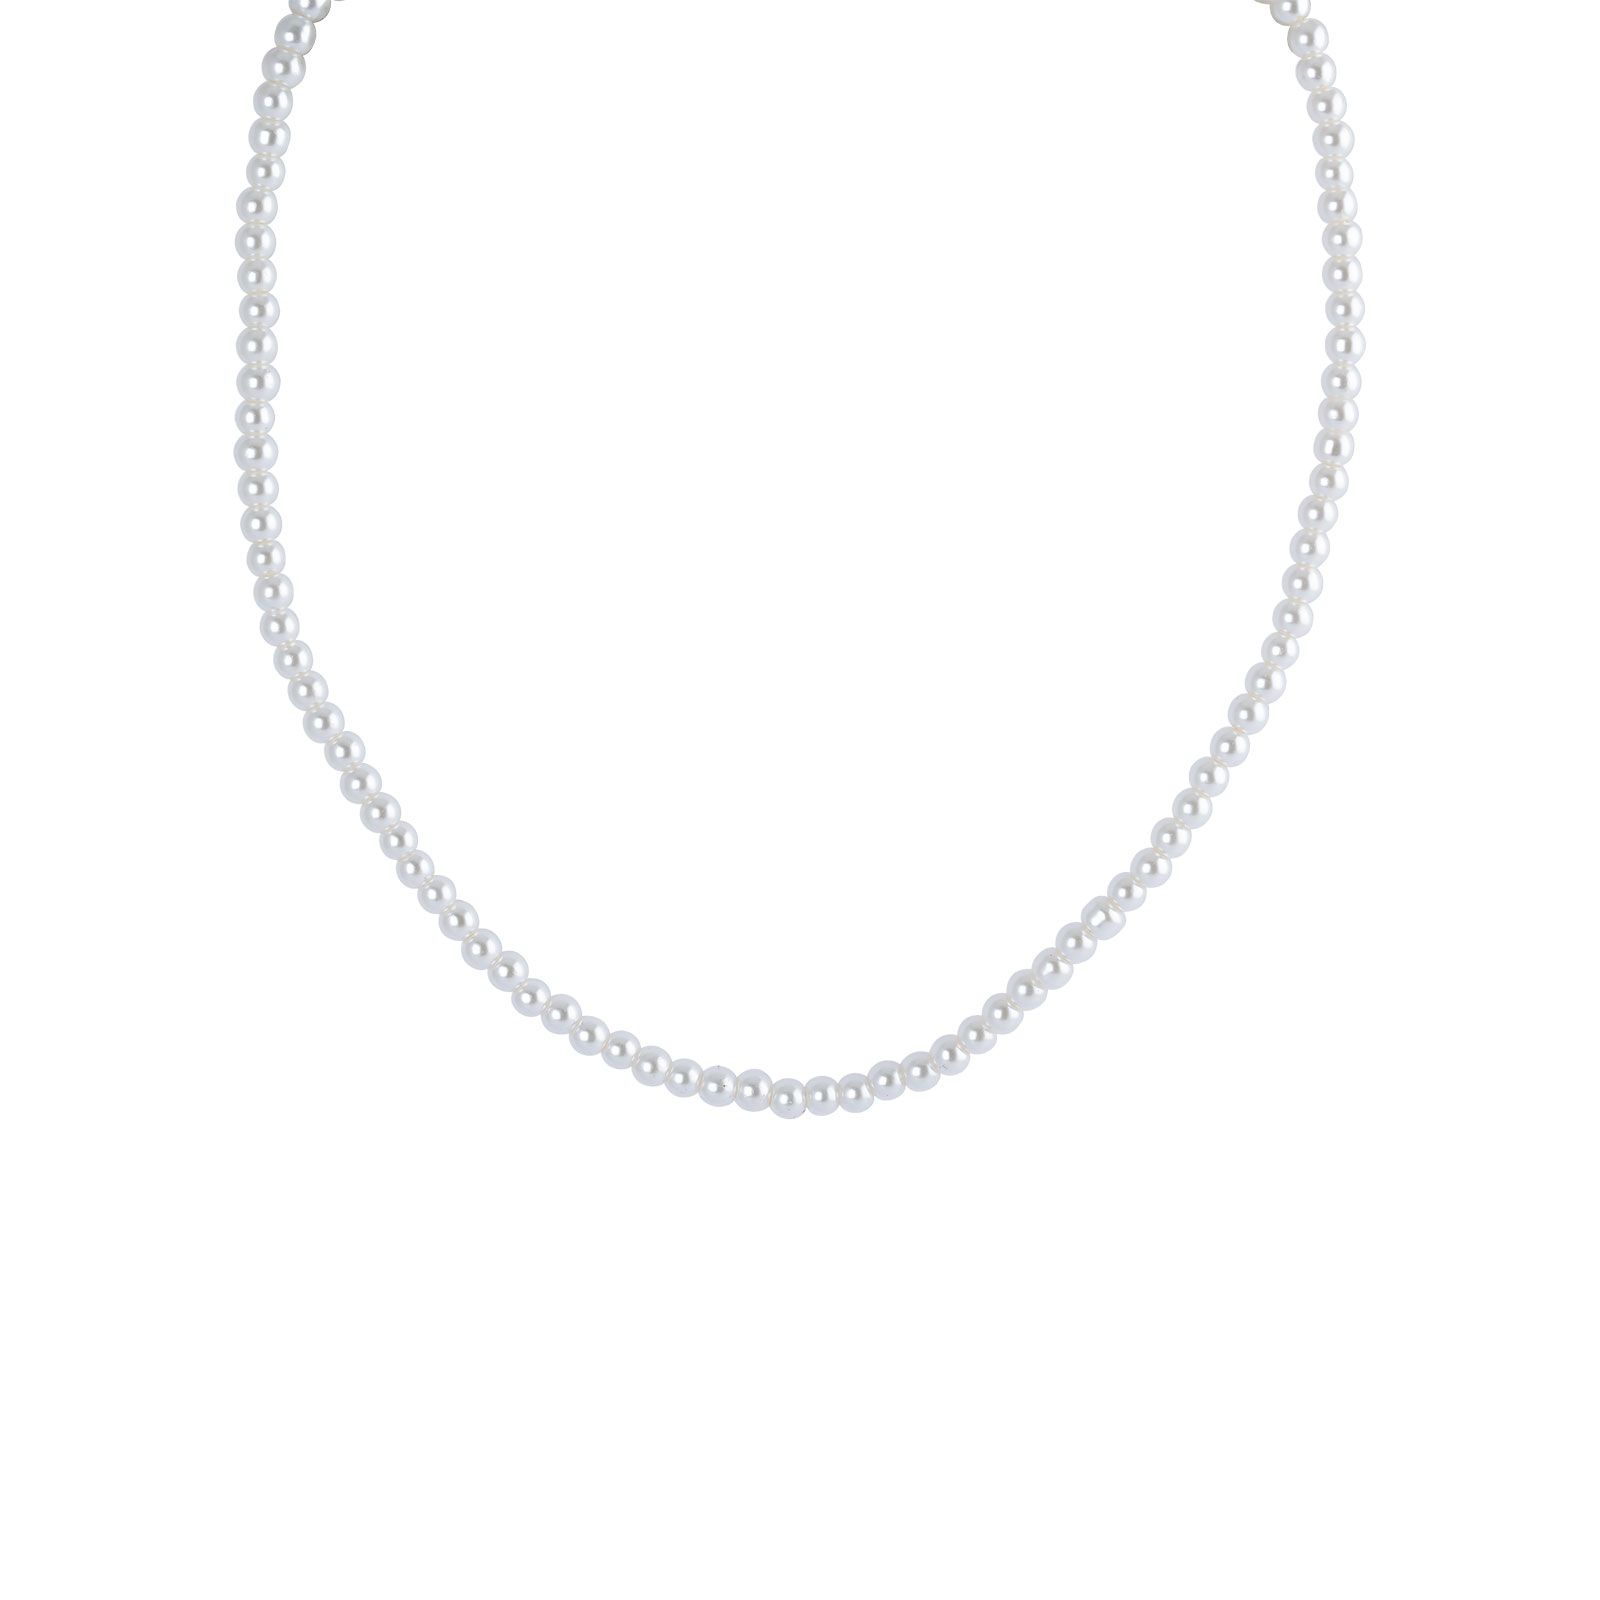 Pärlhalsband vita pärlor - 40 cm